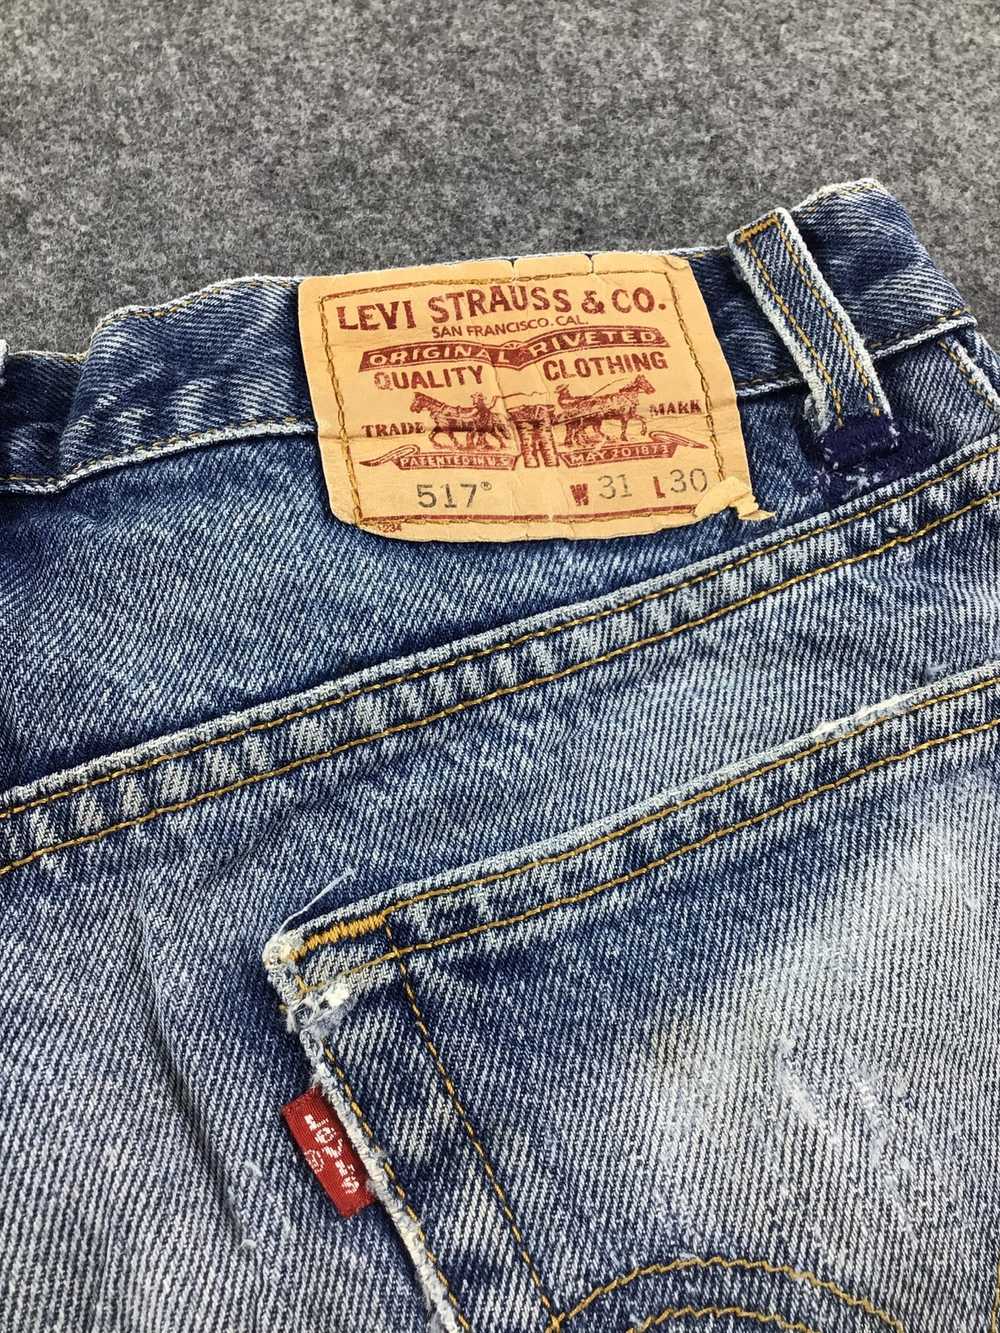 Levi's Vintage Levis 517 Selvedge Jeans - Gem